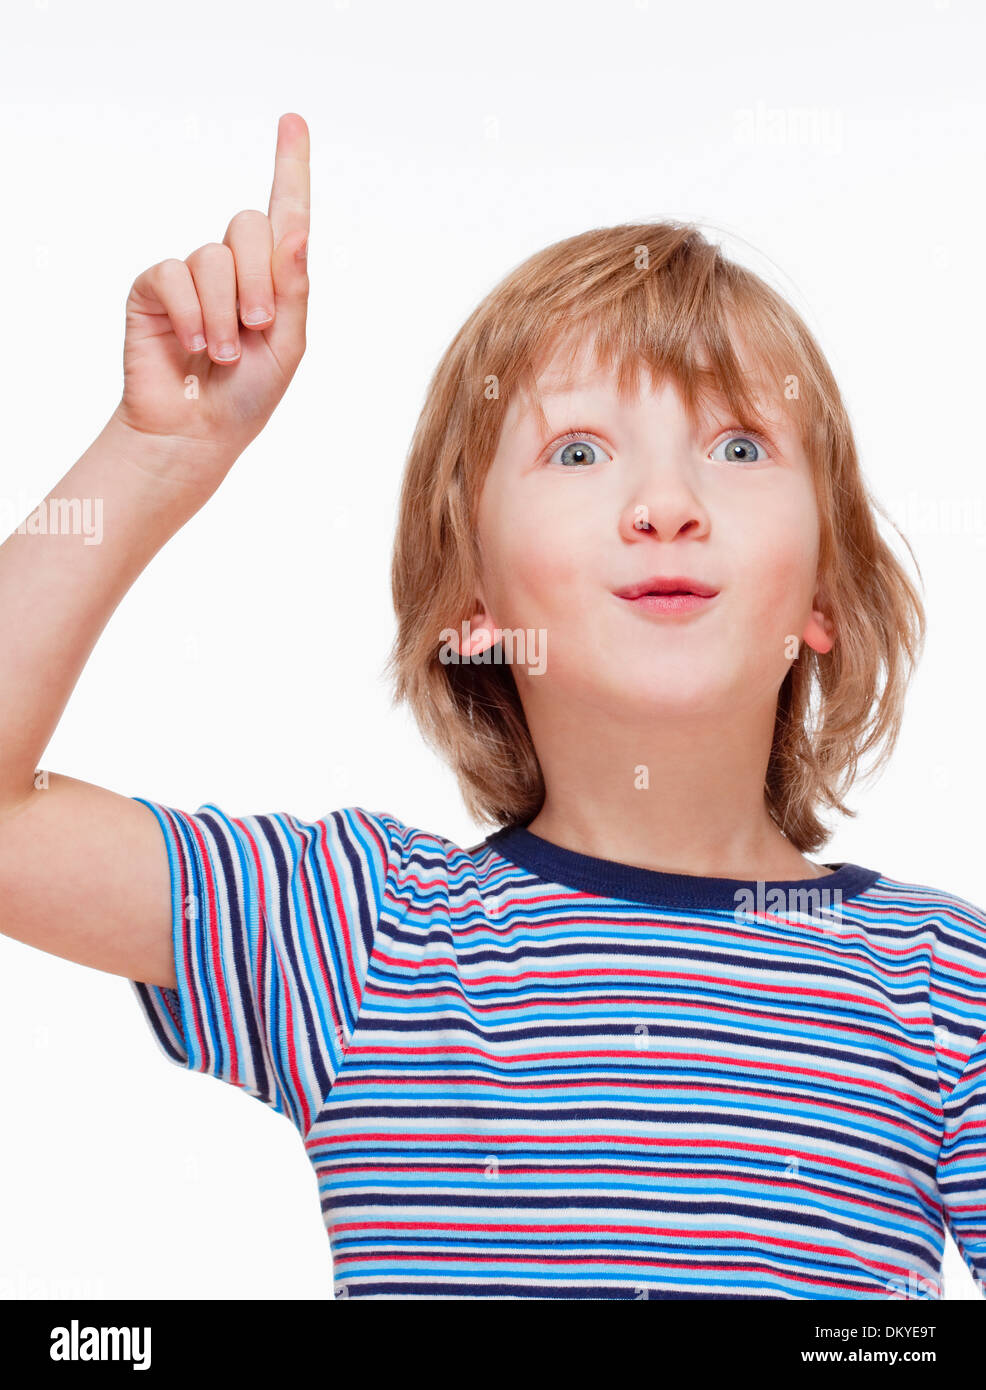 Junge auf der Suche, hob seine Hand nach oben - Isolated on White Stockfoto